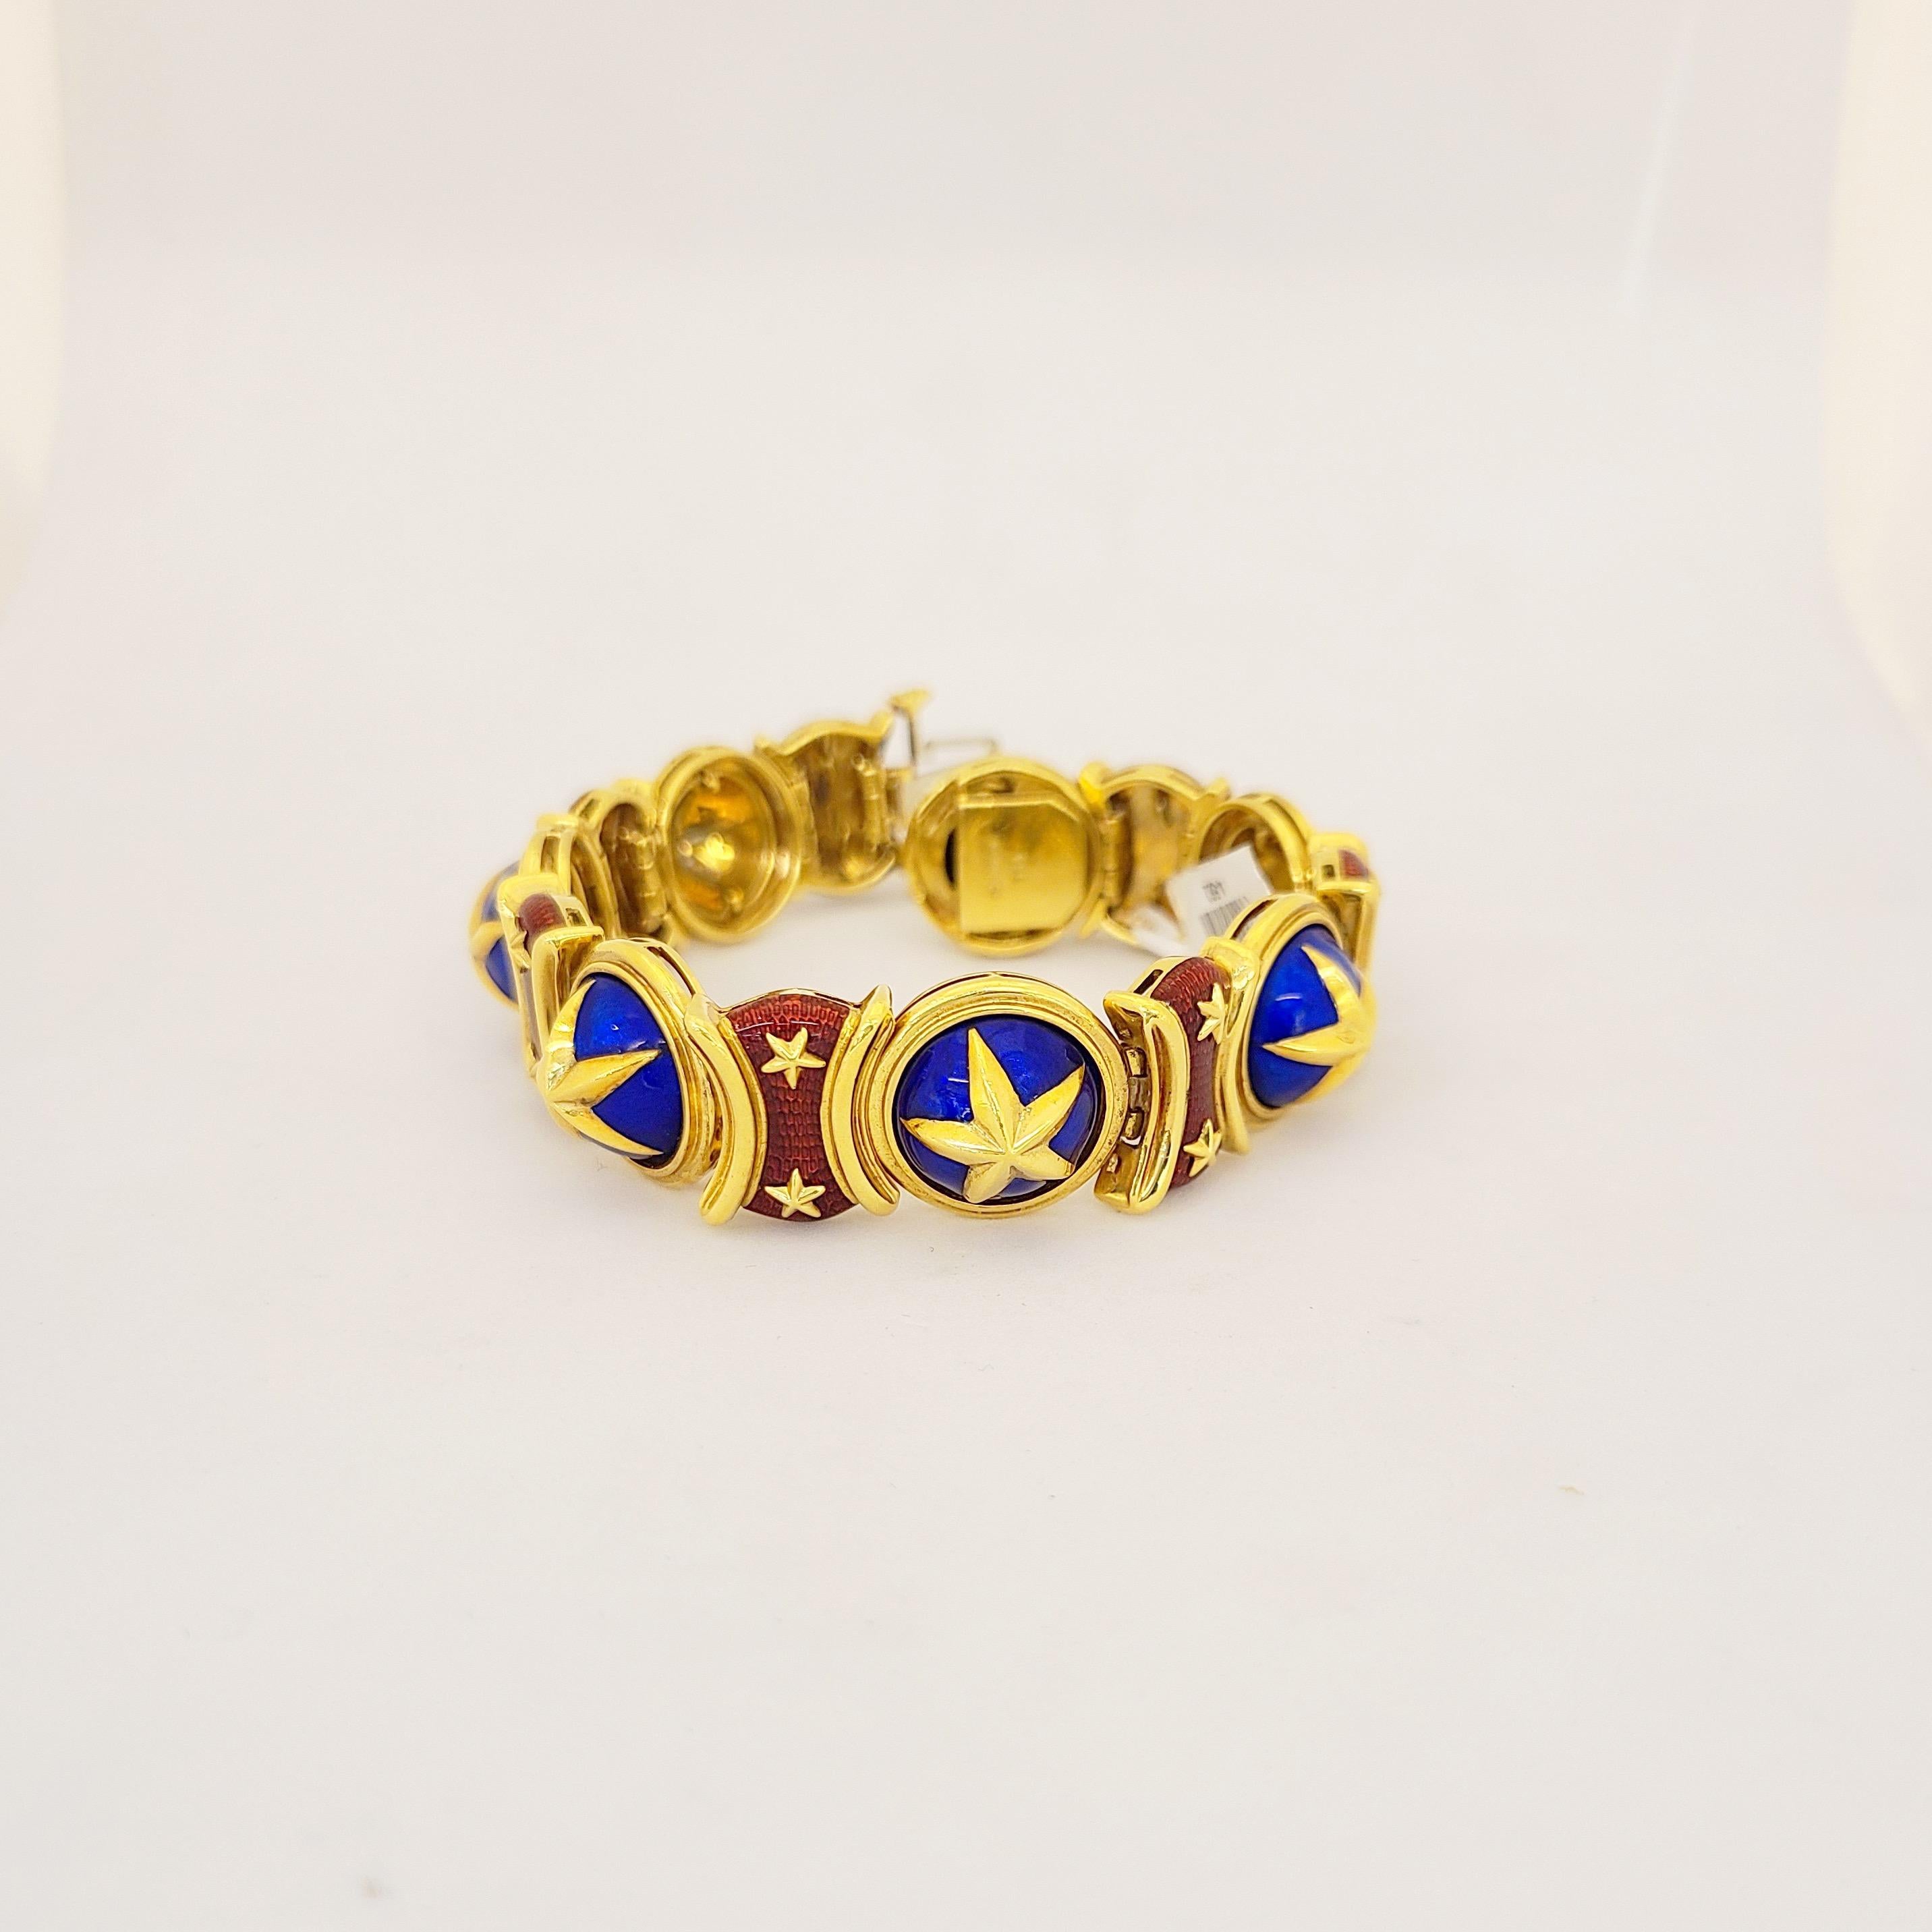 Bracelet classique en or jaune 18 carats conçu avec 14  liens émaillés alternés. Une belle  motif étoile d'or  sur un émail guicholé bleu et rouge vibrant. Le bracelet mesure 7,5